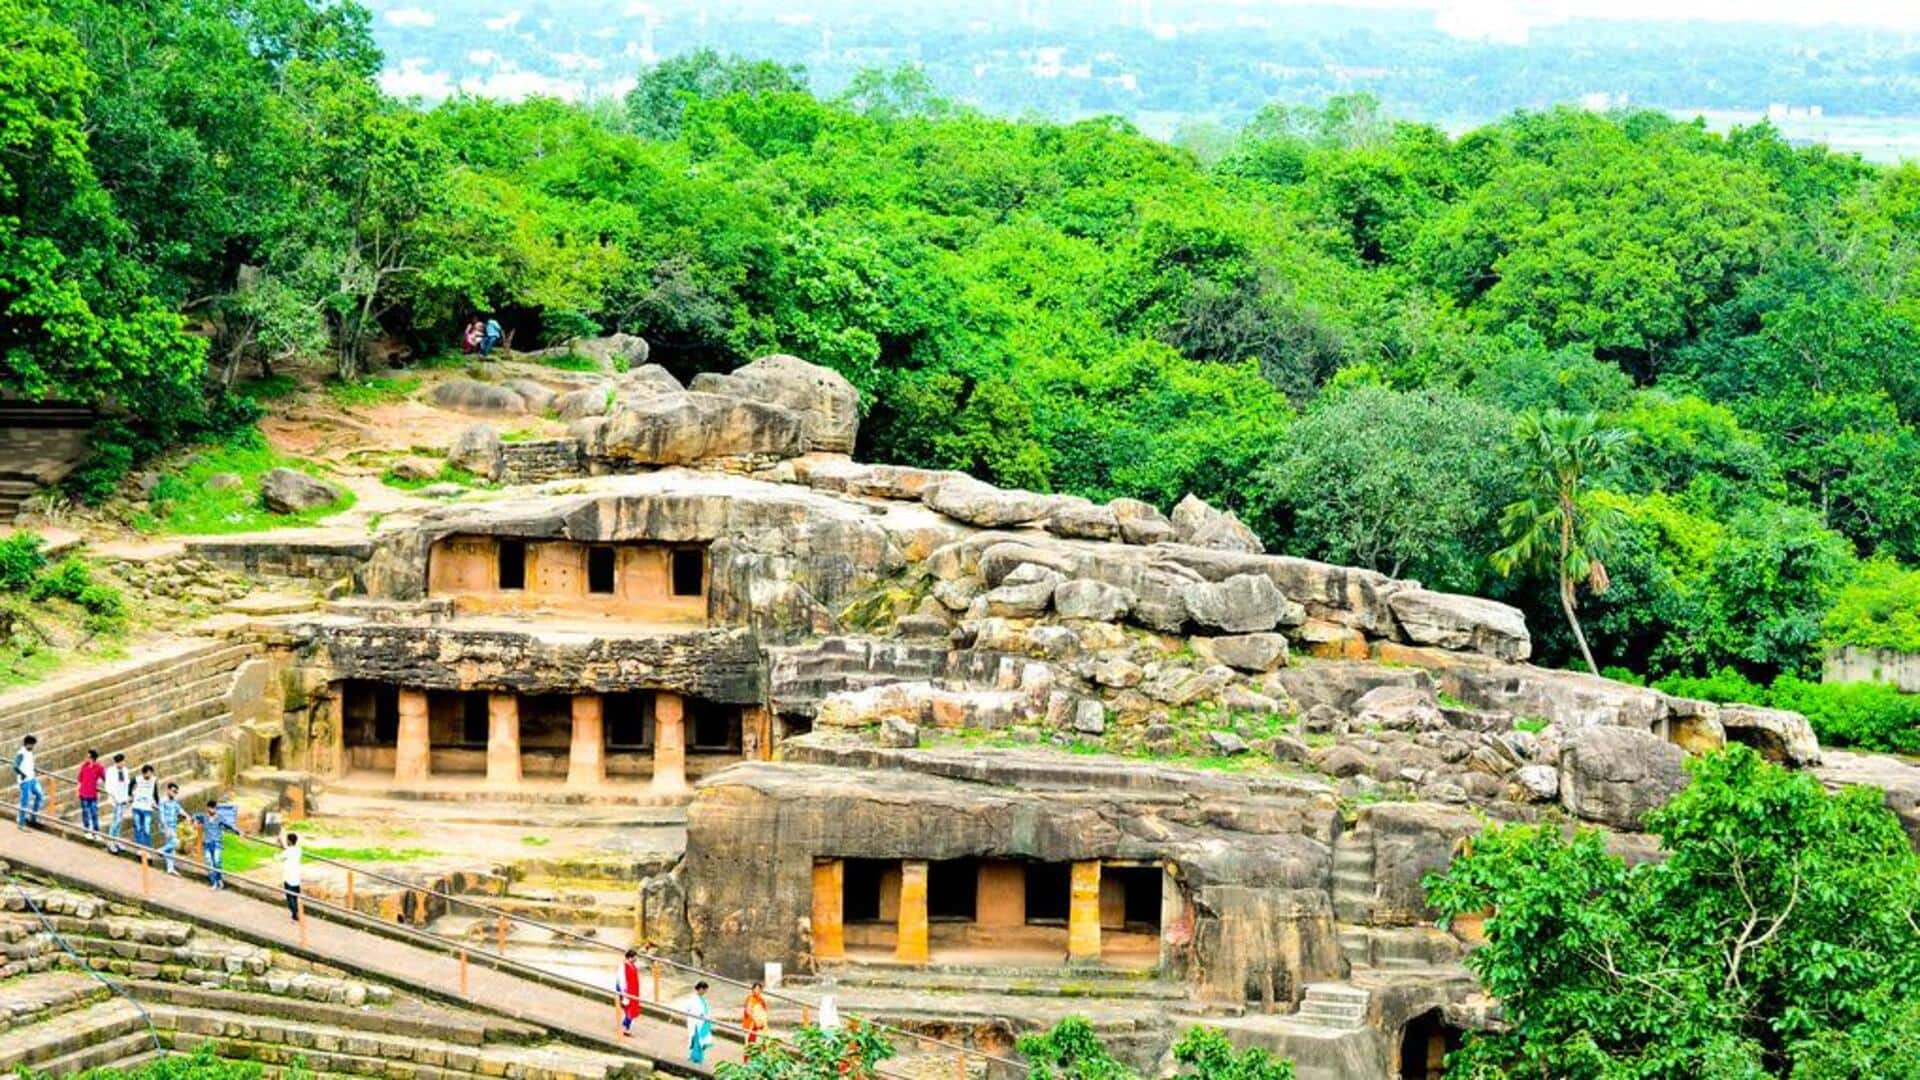 ओडिशा: पुरी में स्थित हैं ये 5 खूबसूरत पर्यटन स्थल, एक बार जरूर करें इनका रुख